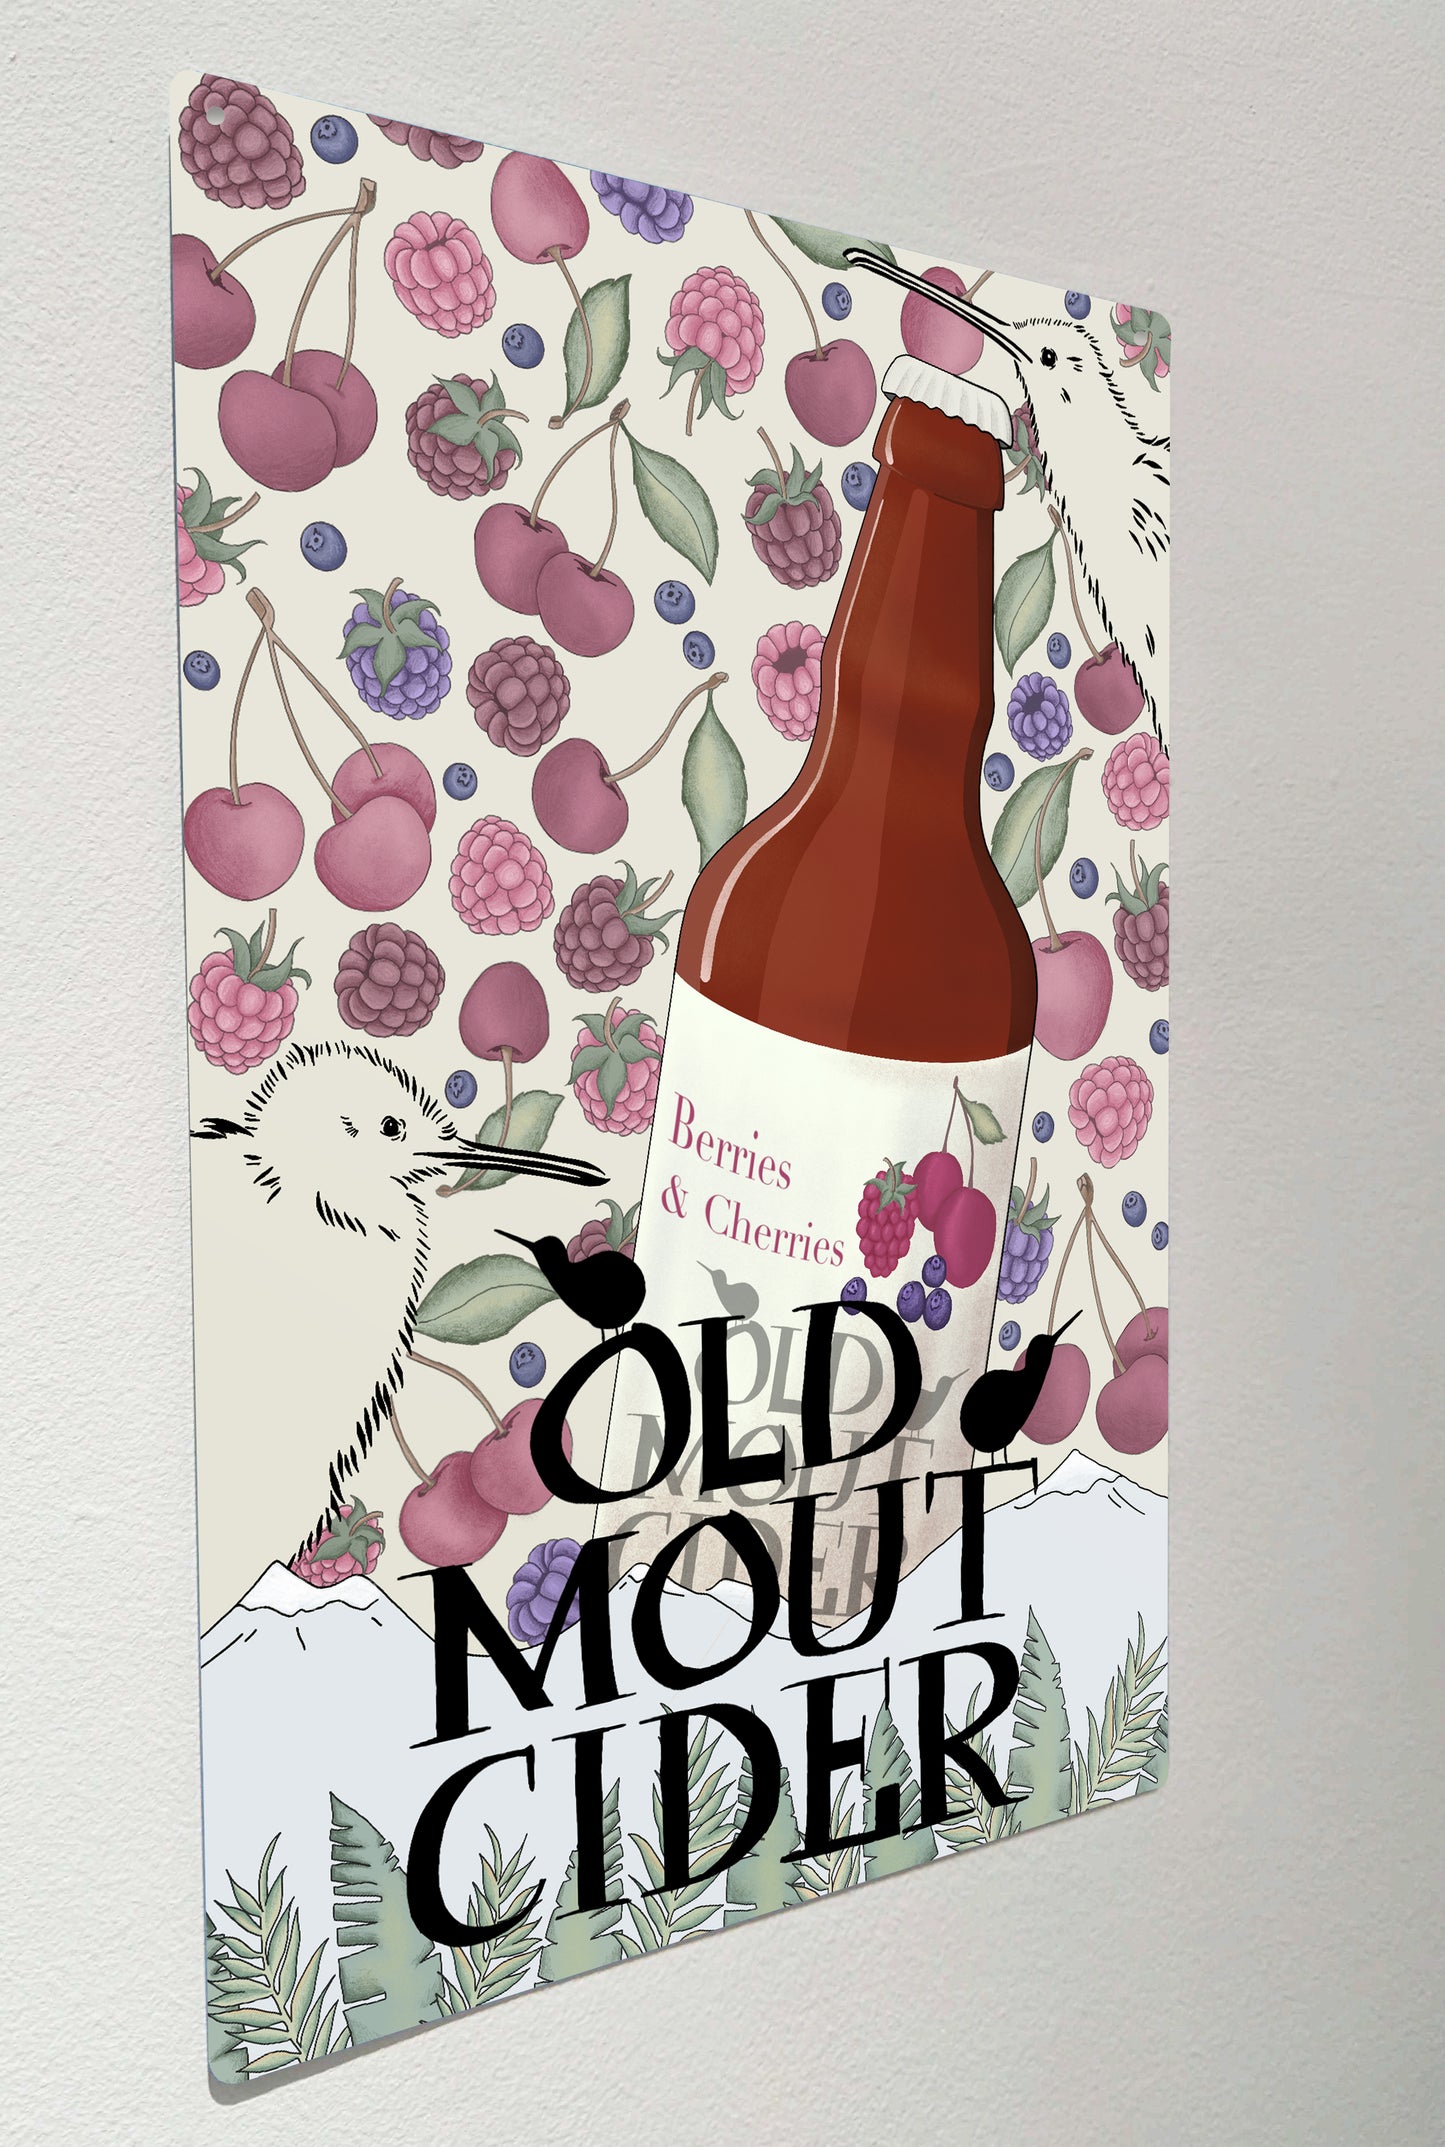 Old Mout Cider.